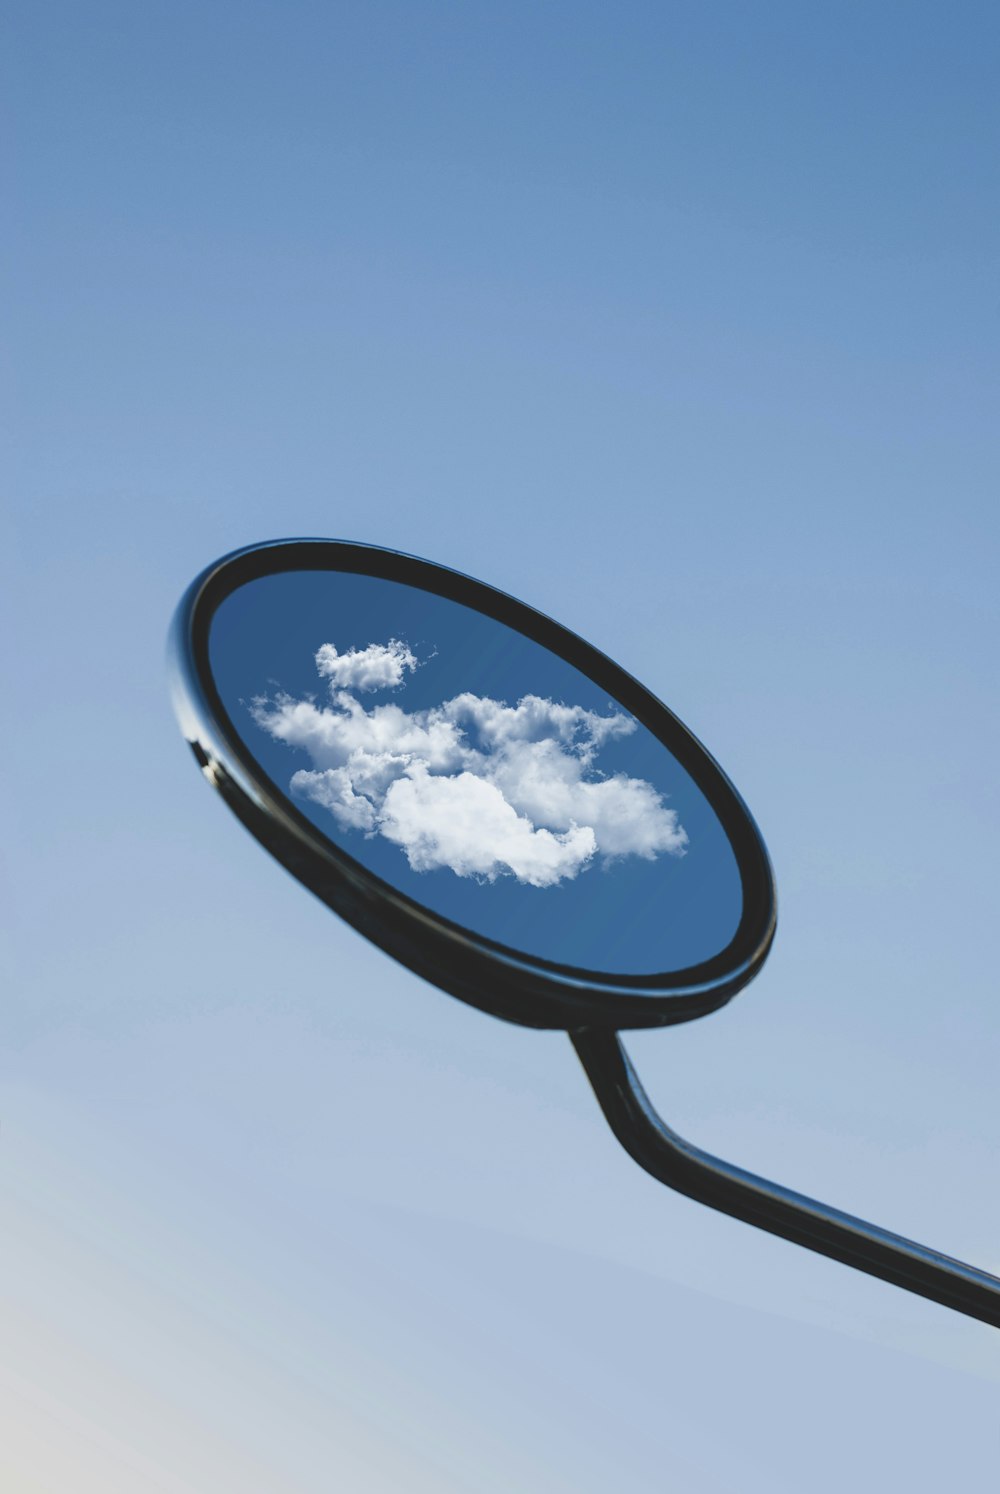 black framed magnifying glass under blue sky during daytime